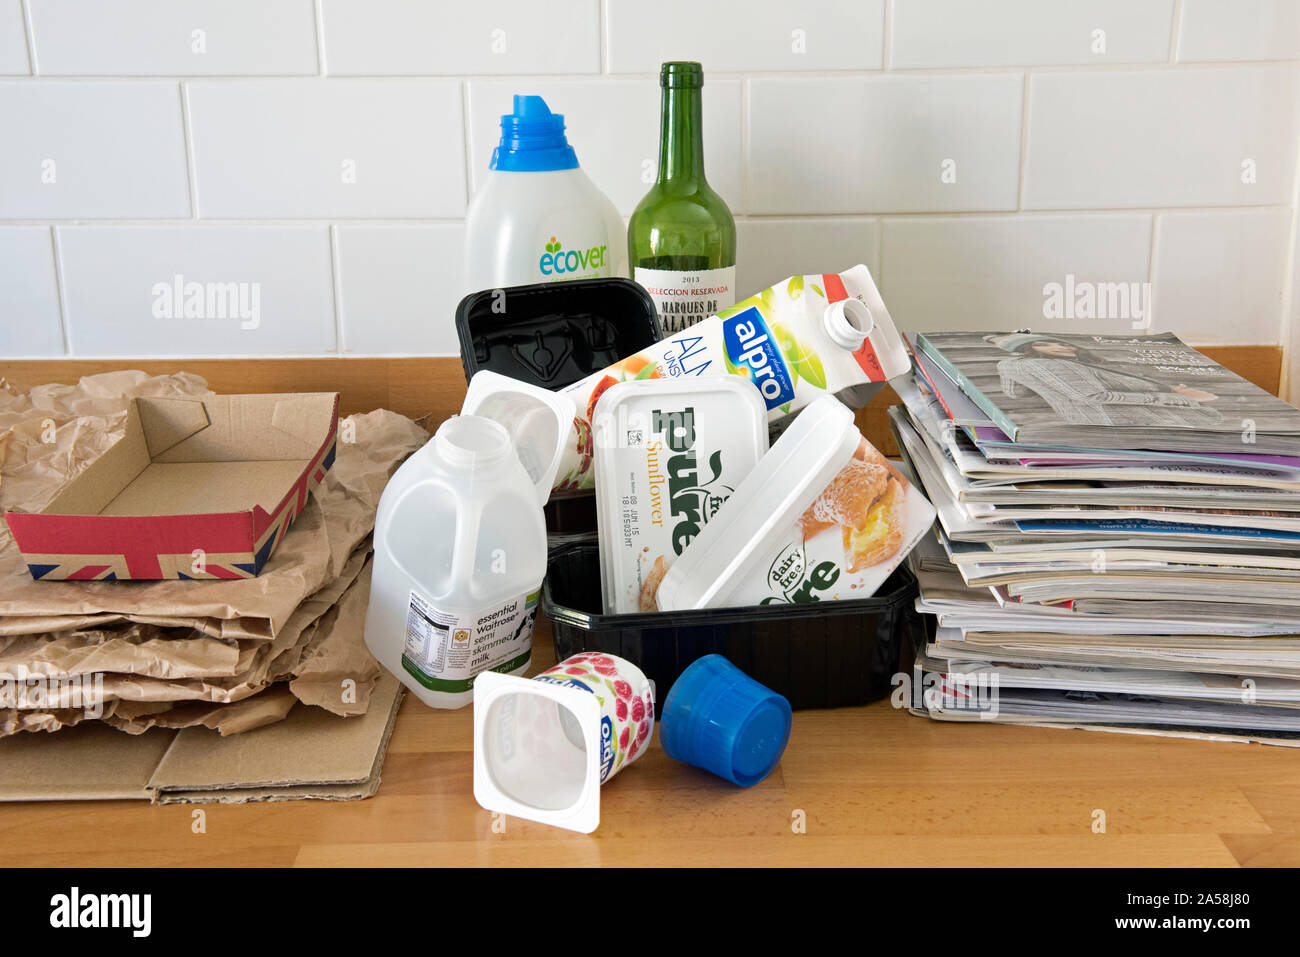 Articoli per la casa sul piano cucina pronti per il riciclaggio inclusa la plastica, carta, cartone e vecchi cataloghi. Foto Stock